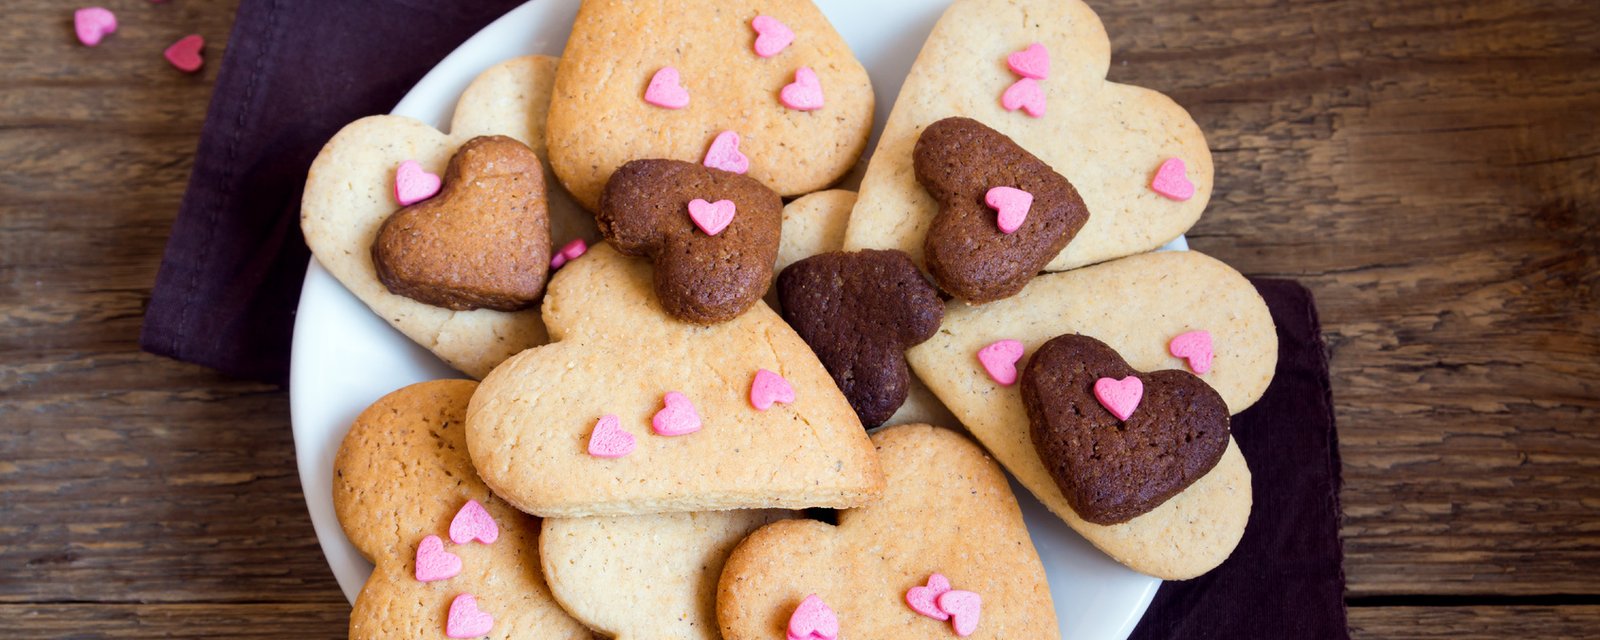 Ces biscuits au chocolat en forme de coeur vous mettra dans l'ambiance pour la Saint-Valentin!